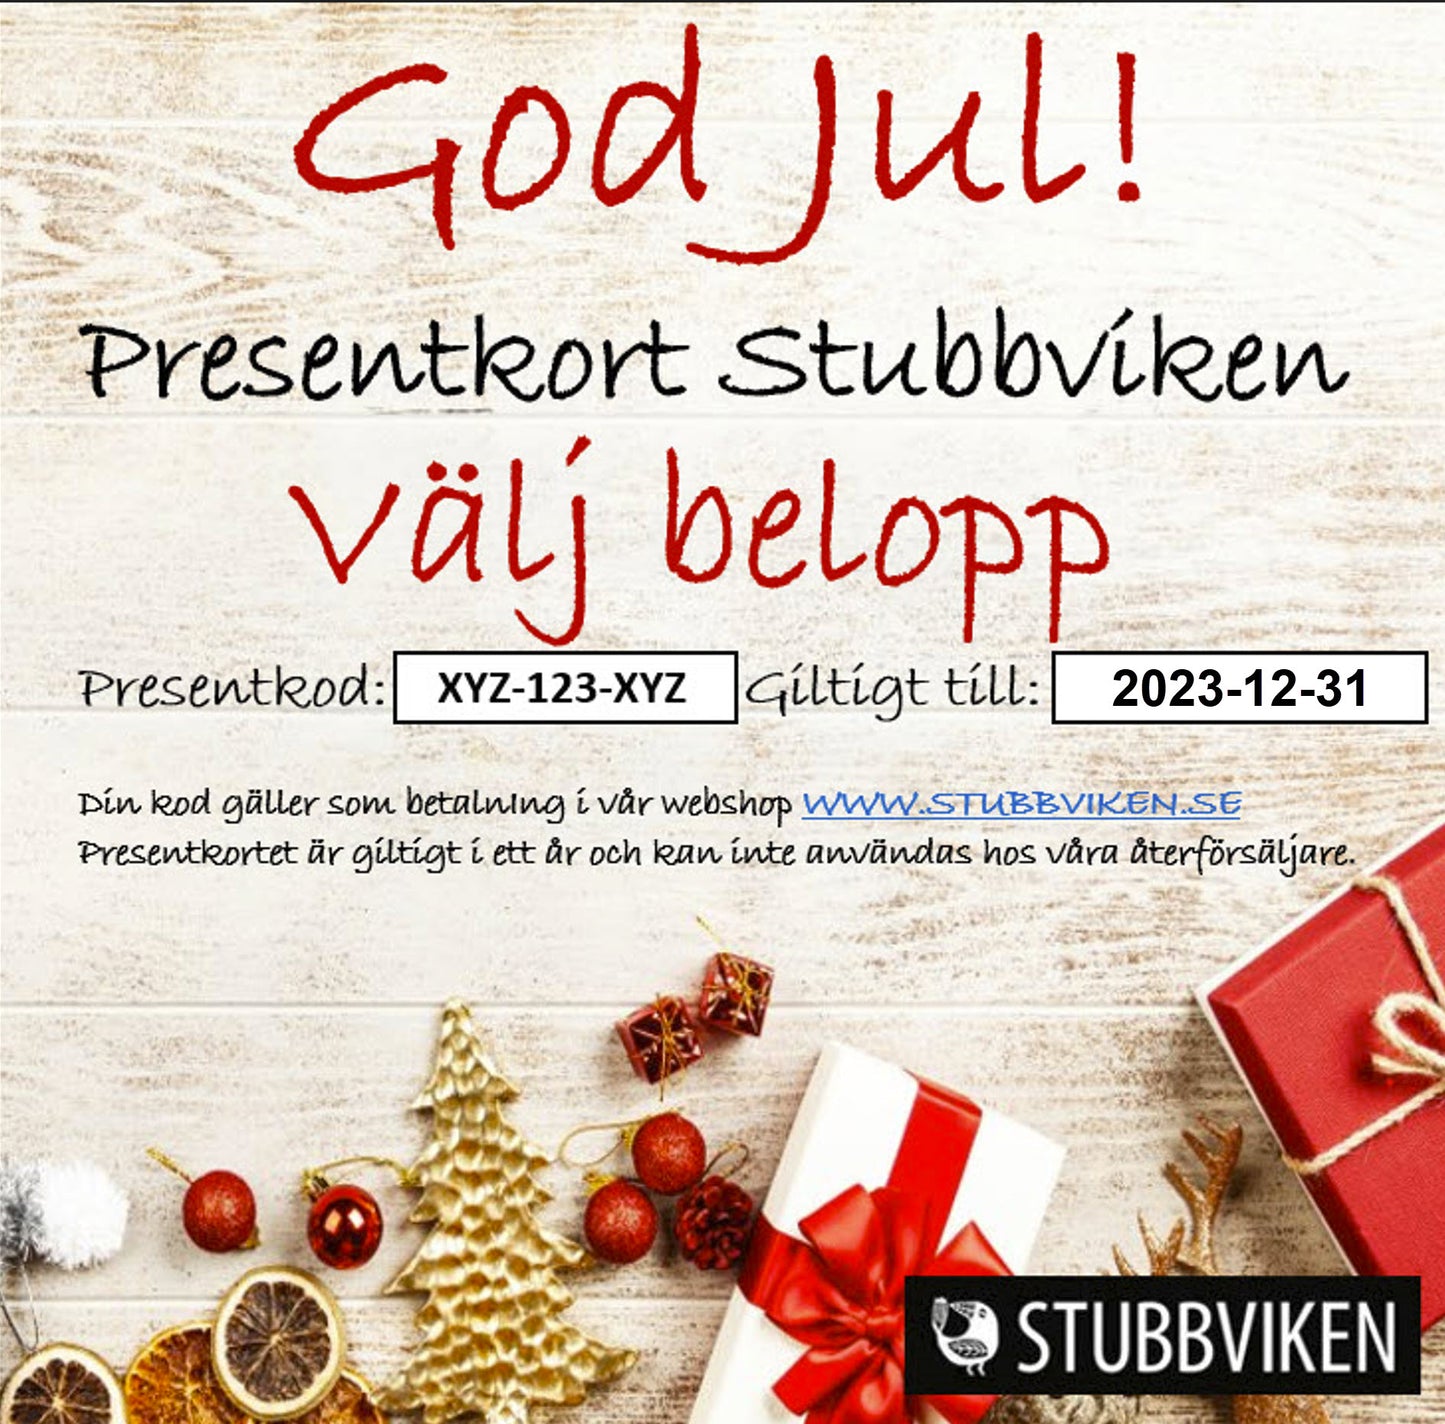 Presentkort Stubbviken - Skickas till köparens postadress